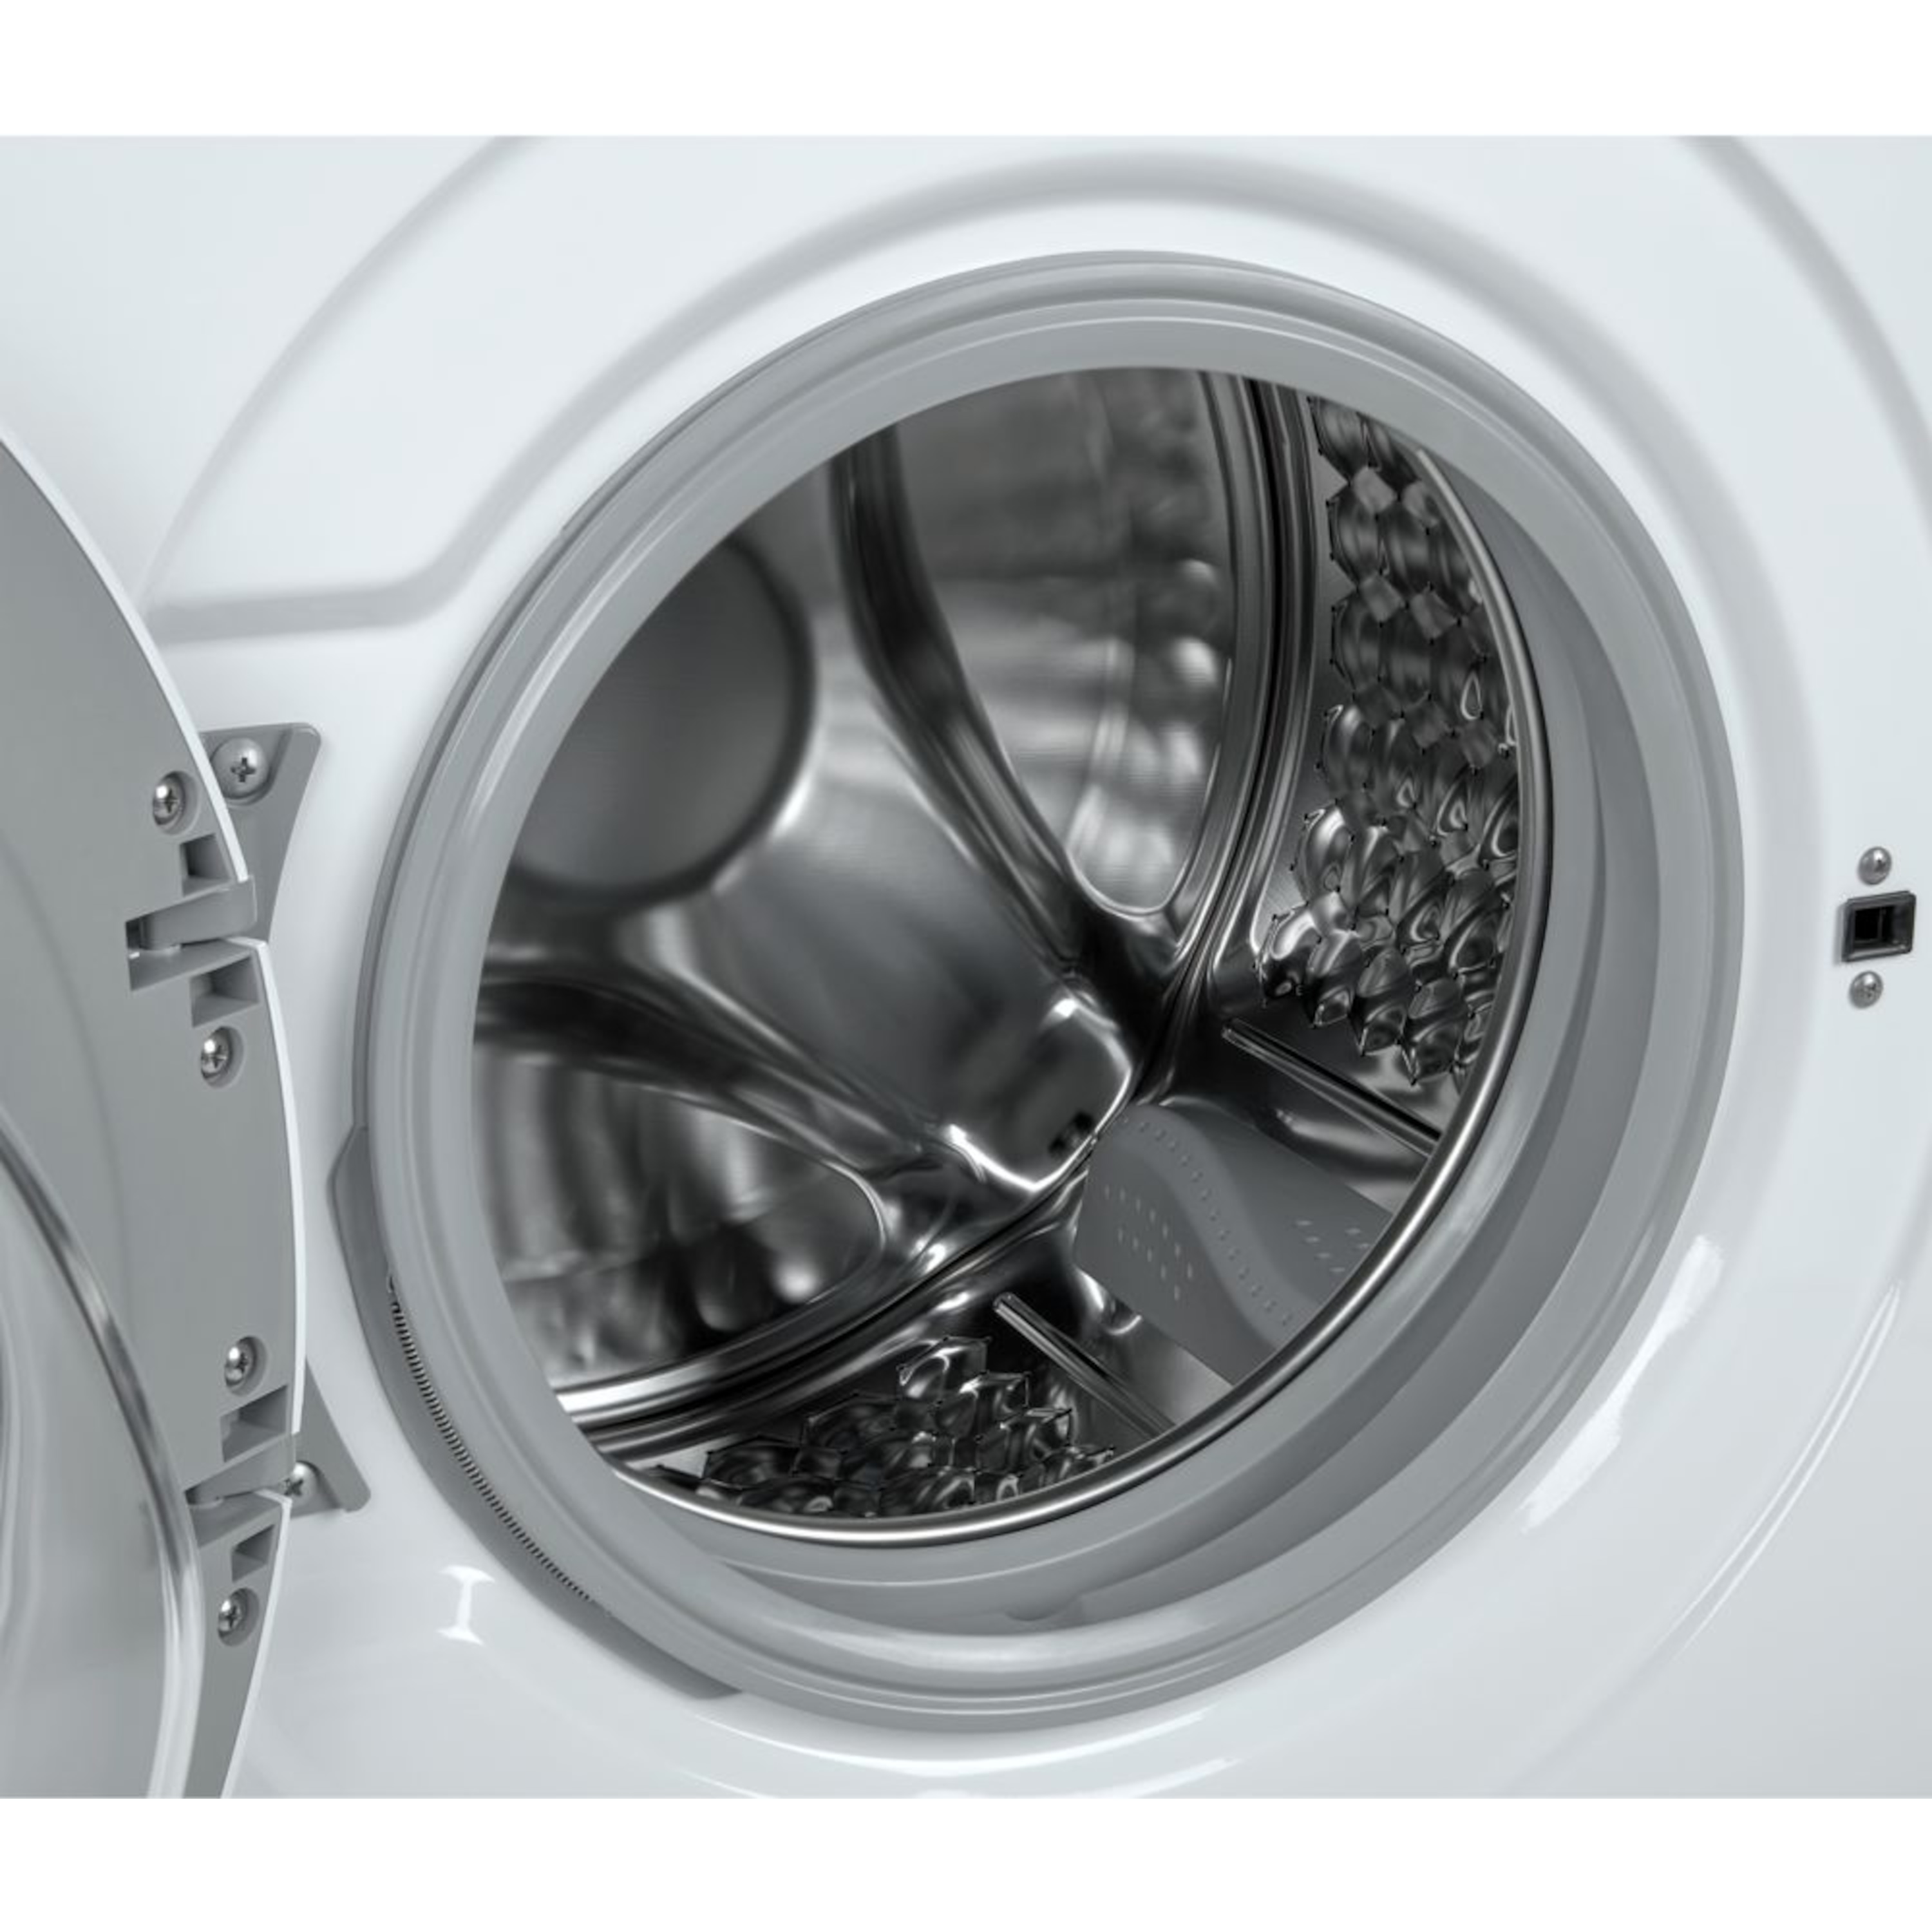 MEDION® Waschmaschine MD 37378, Nennkapazität 7 kg, 16 Waschprogramme, 1400 U/min, LED-Display, Startzeitverzögerung